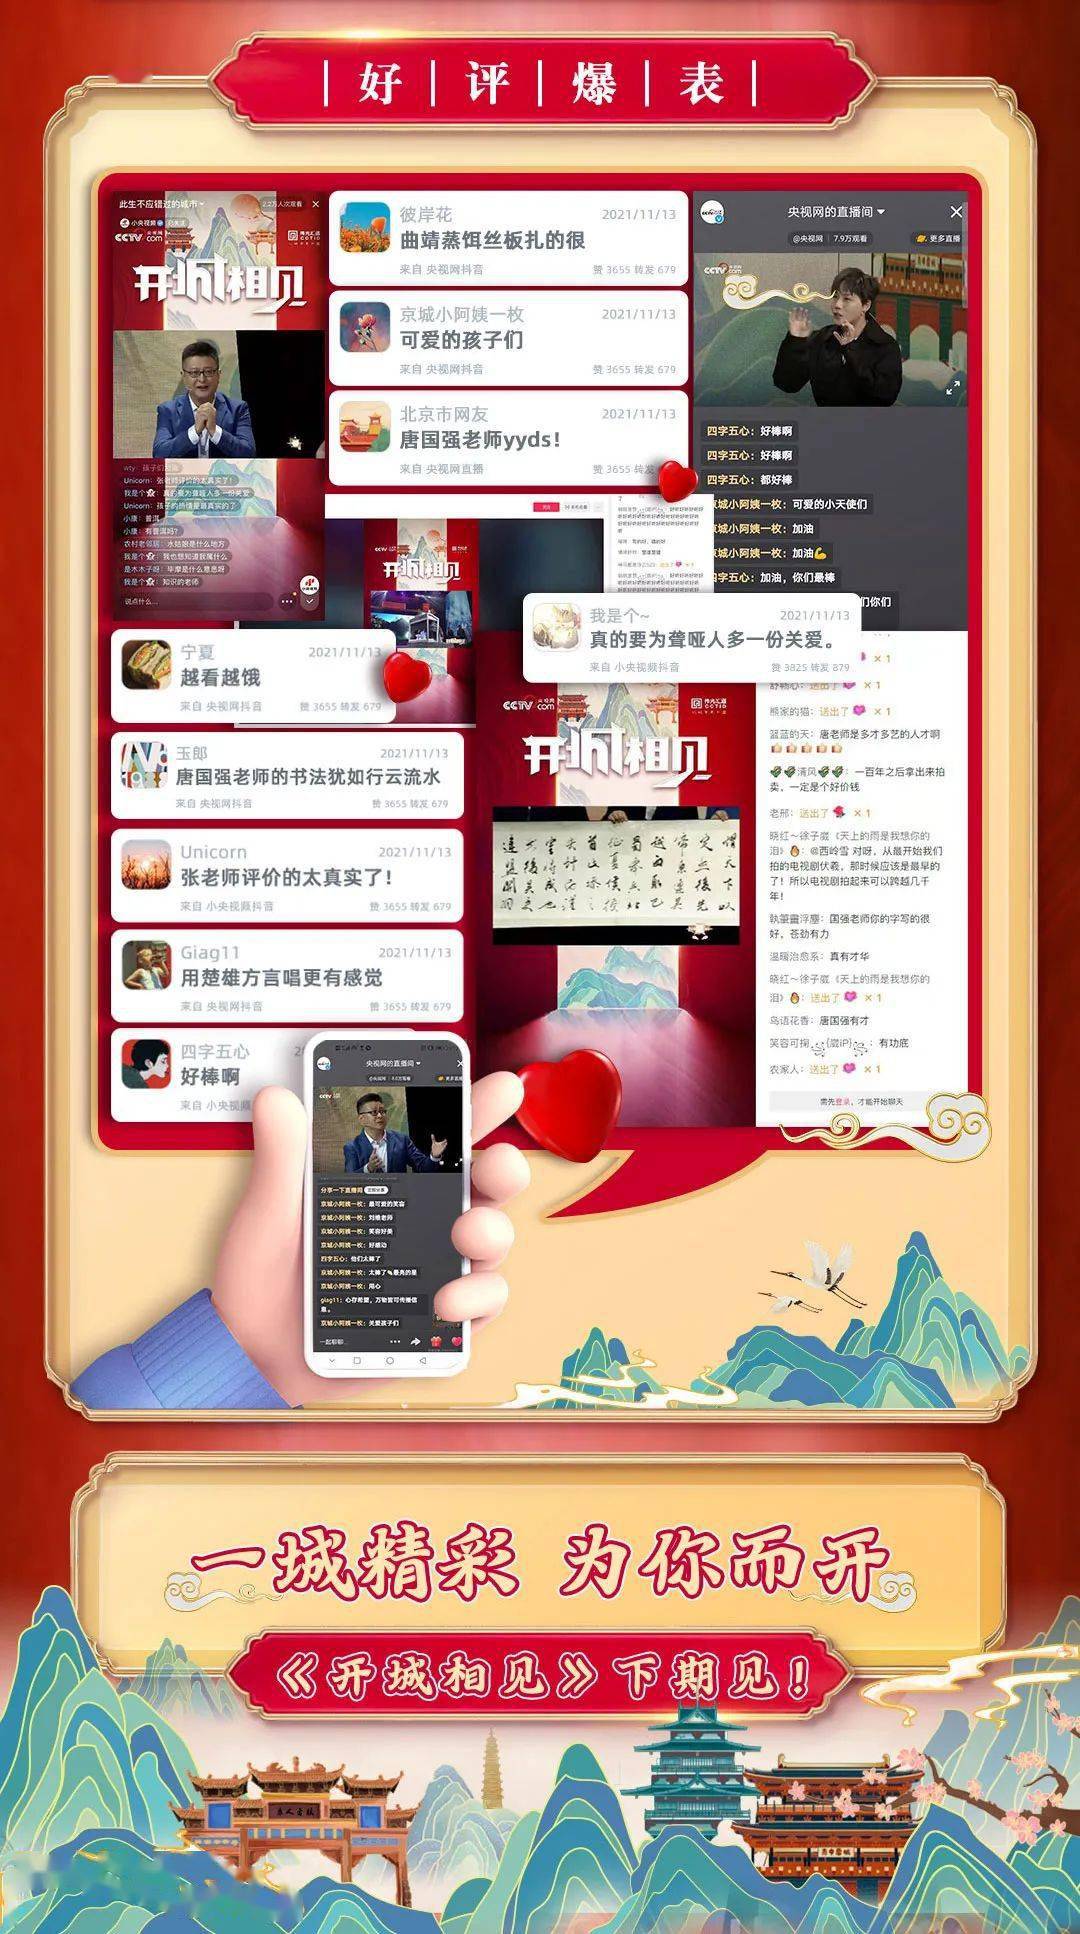 手机搜狐视频资讯版6搜狐视频xp版下载2018